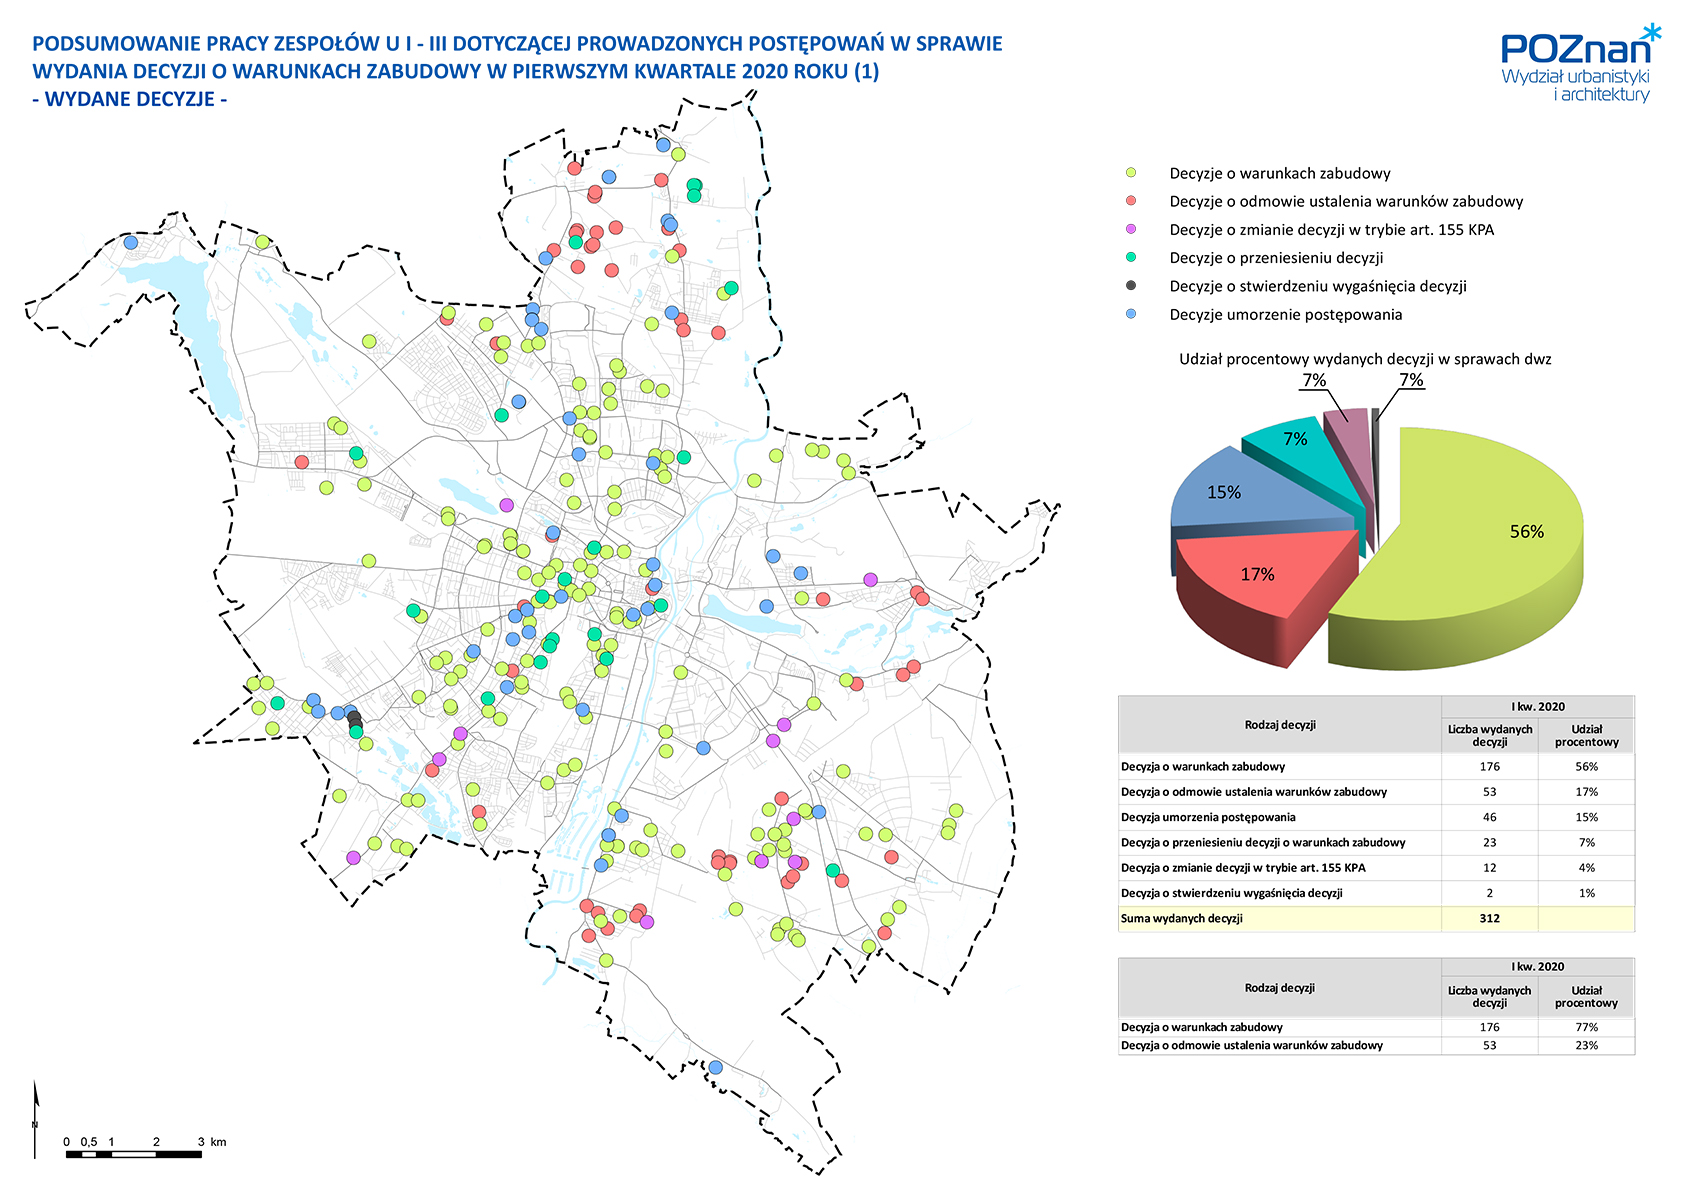 Wydane decyzje o warunkach zabudowy - I kwartał 2020 r. - oznaczone lokalizacje na mapie Poznania